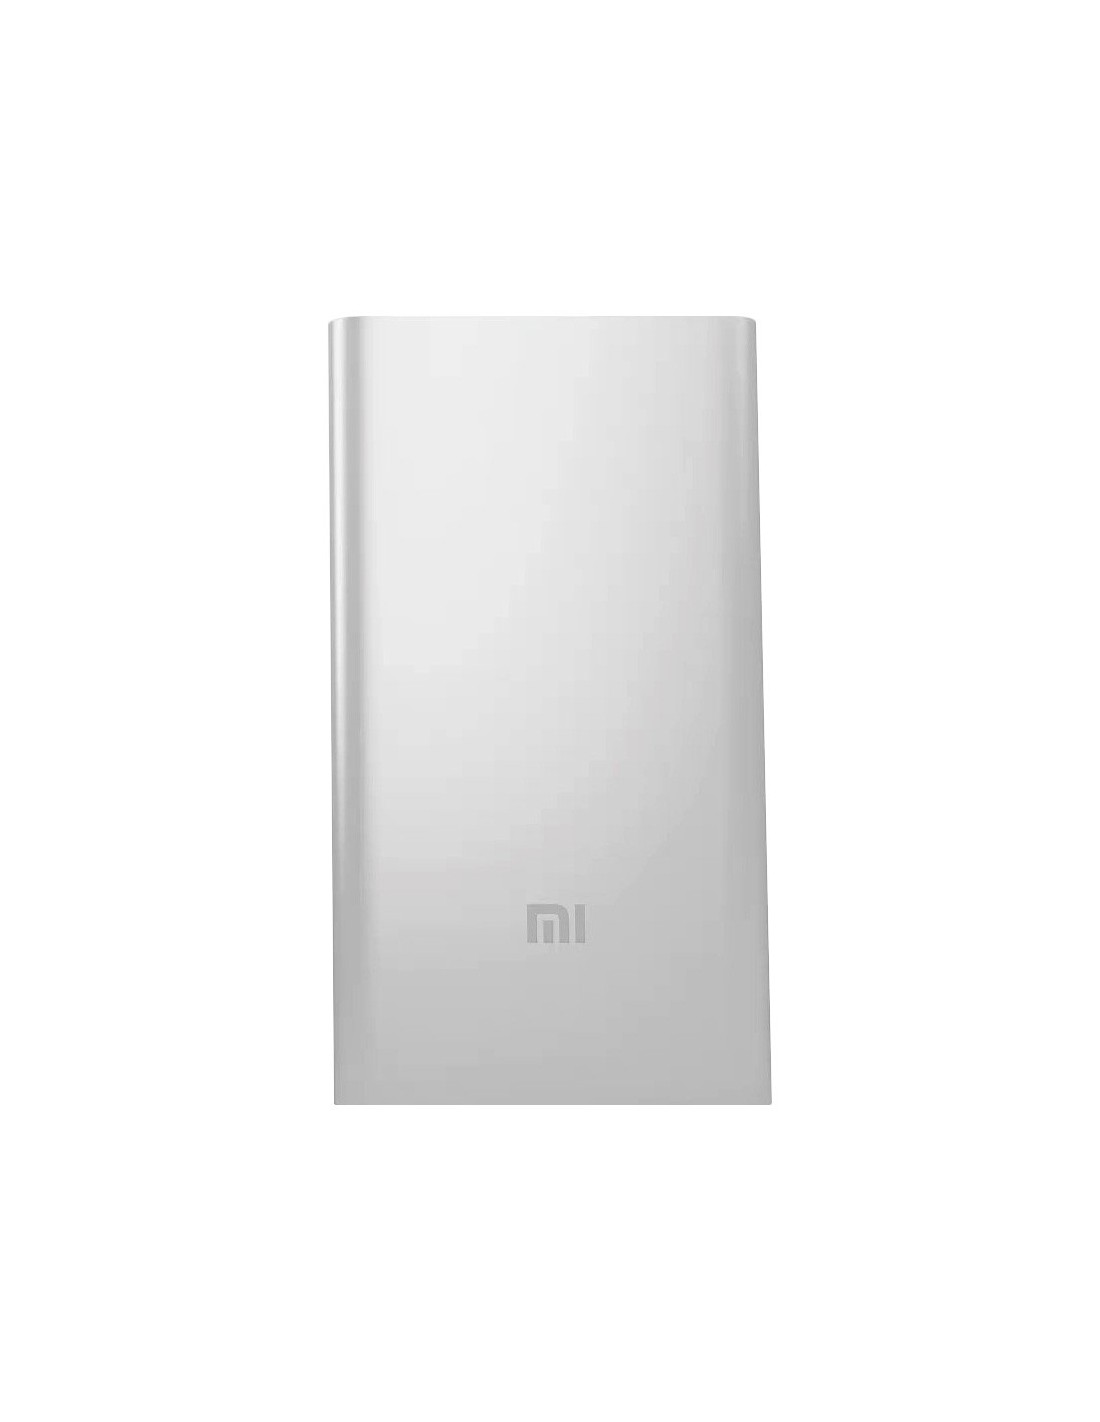 Xiaomi Mi Power Bank 2 batería externa Polímero de litio 5000 mAh Plata